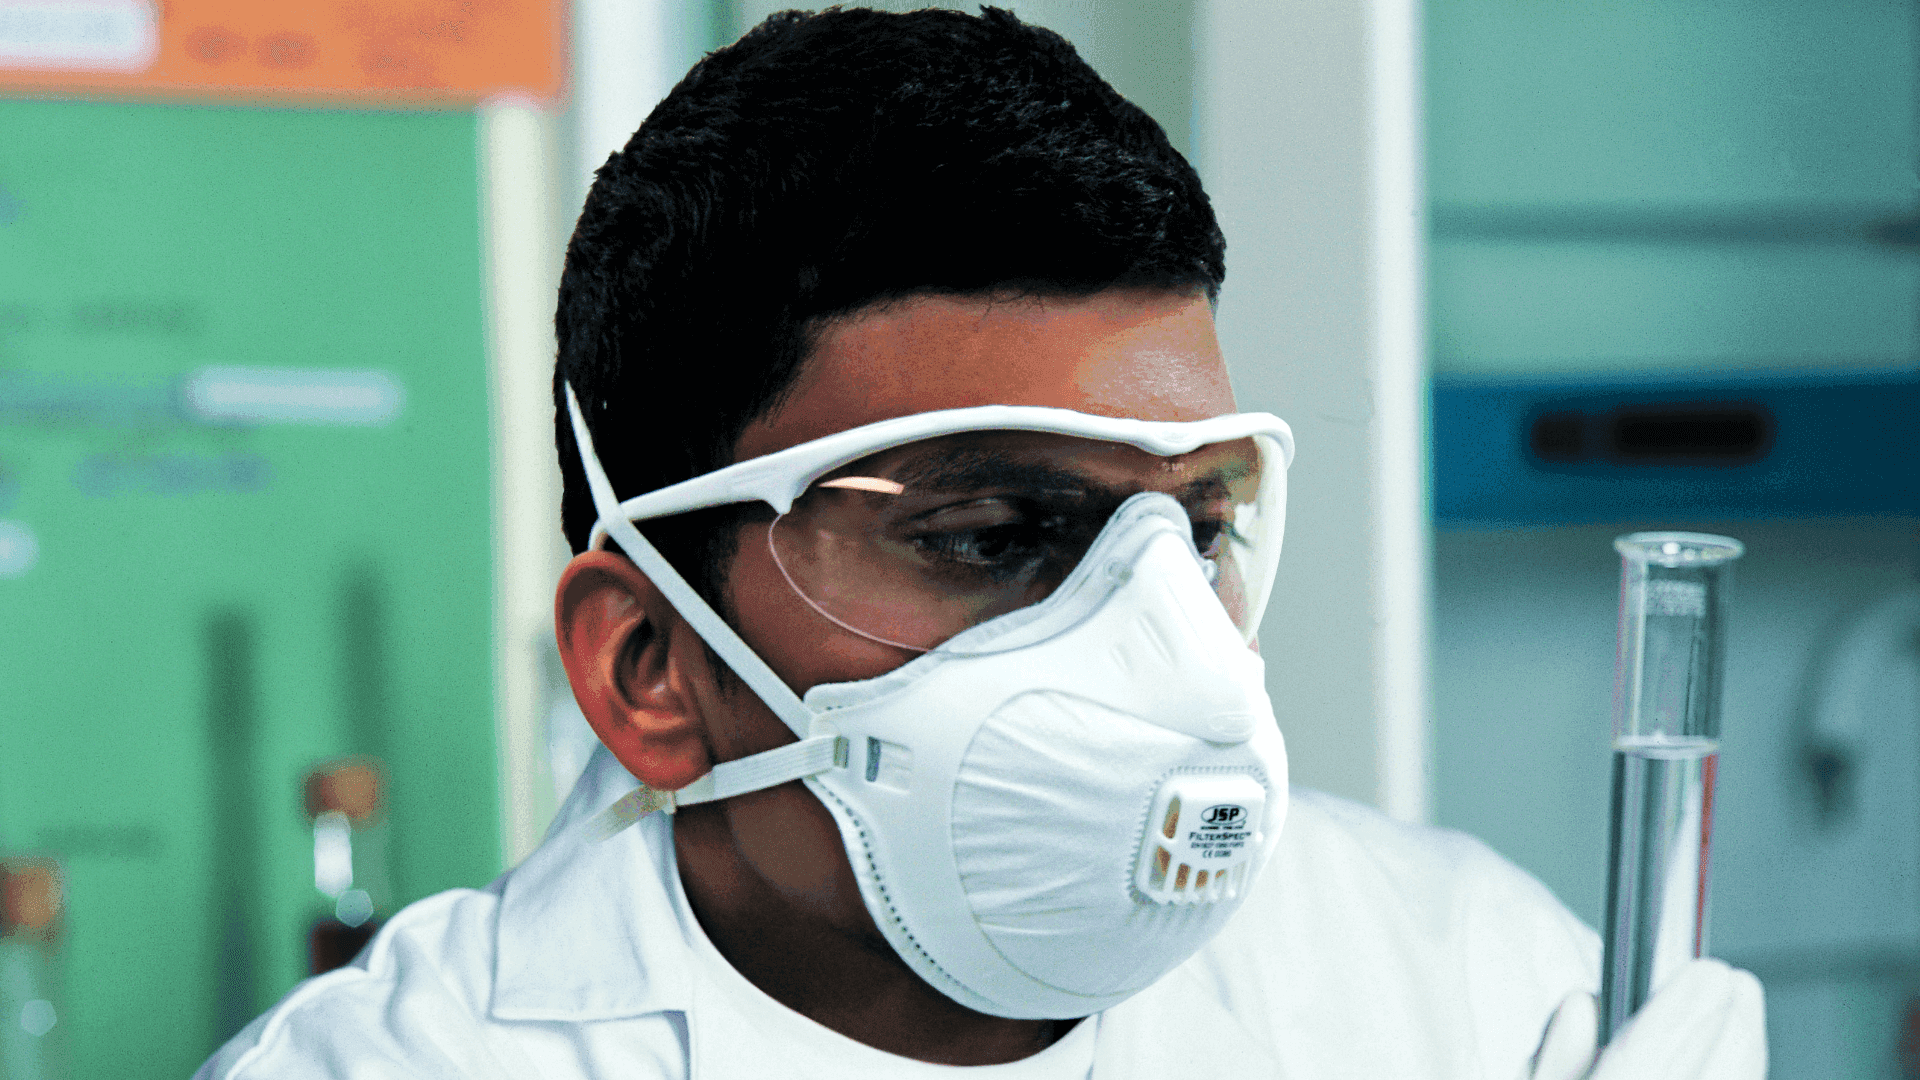 Mascarillas y protección respiratoria: ¿qué hemos aprendido tras la pandemia? article cover picture